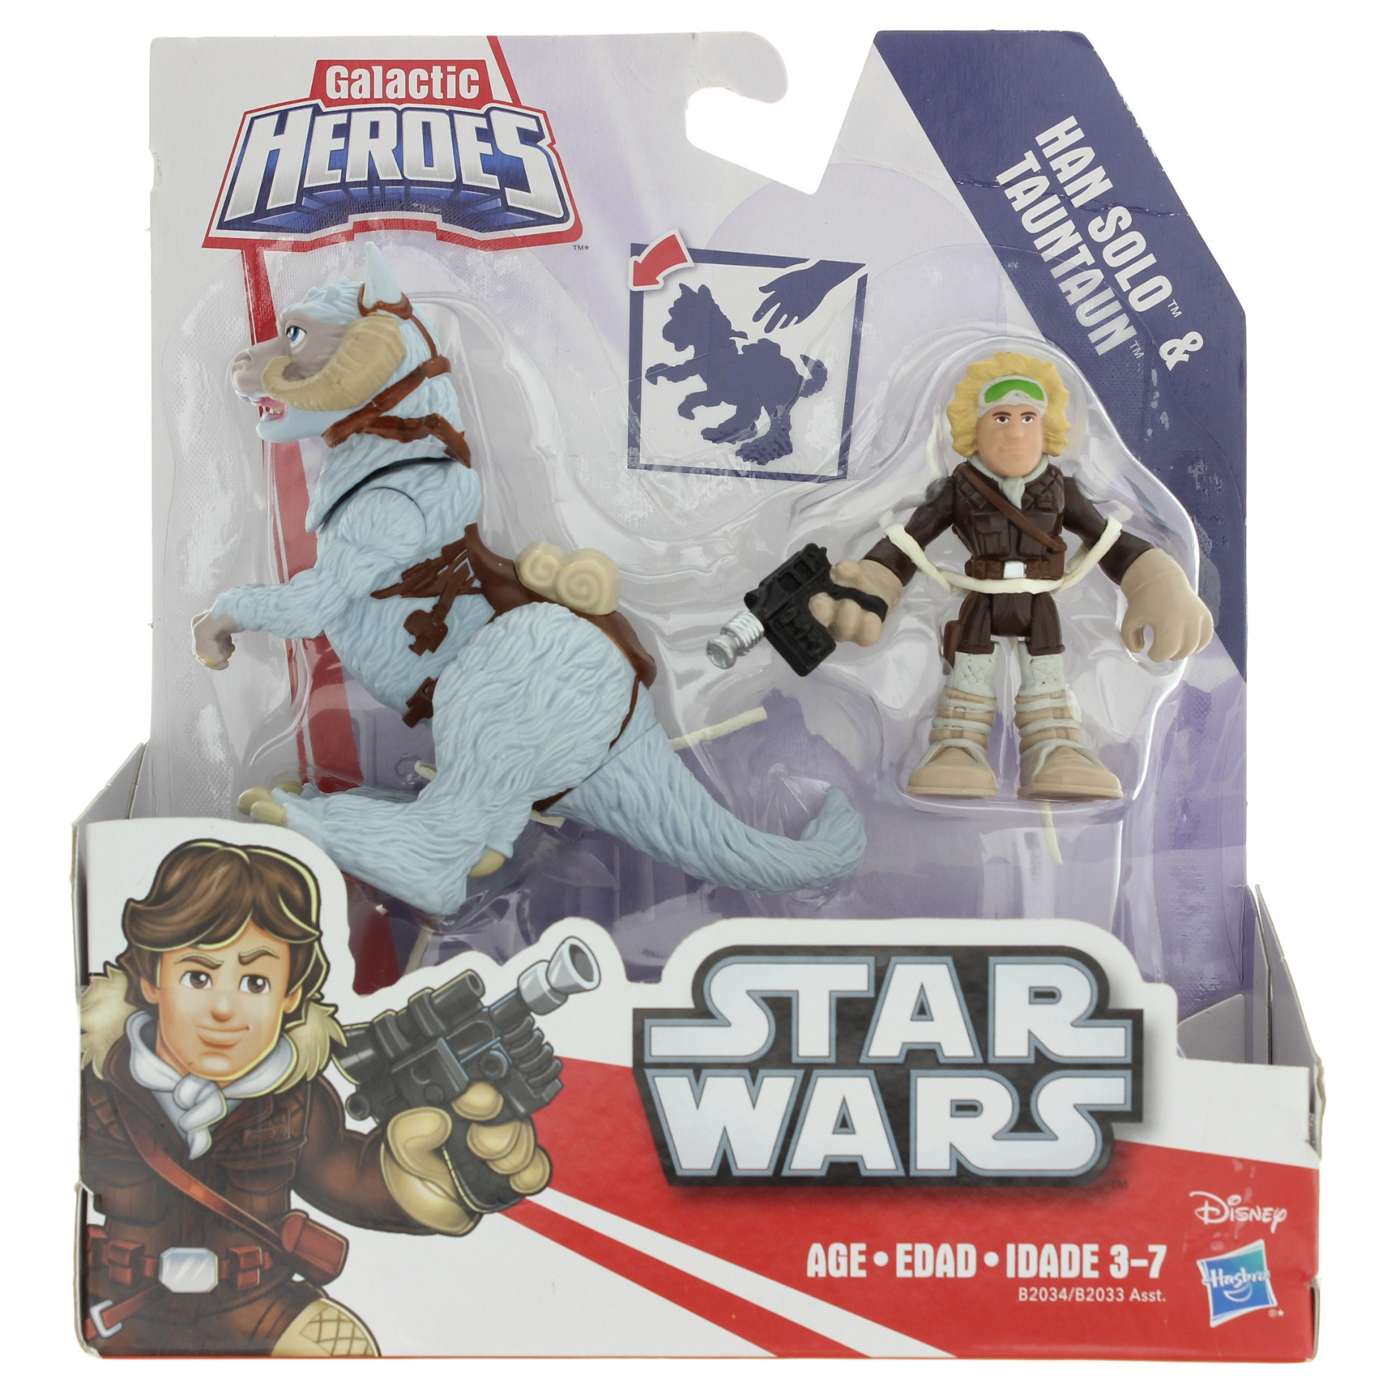 Playskool Heroes Star Wars Galactic Heroes Deluxe Figure Pack Assortment; image 1 of 2